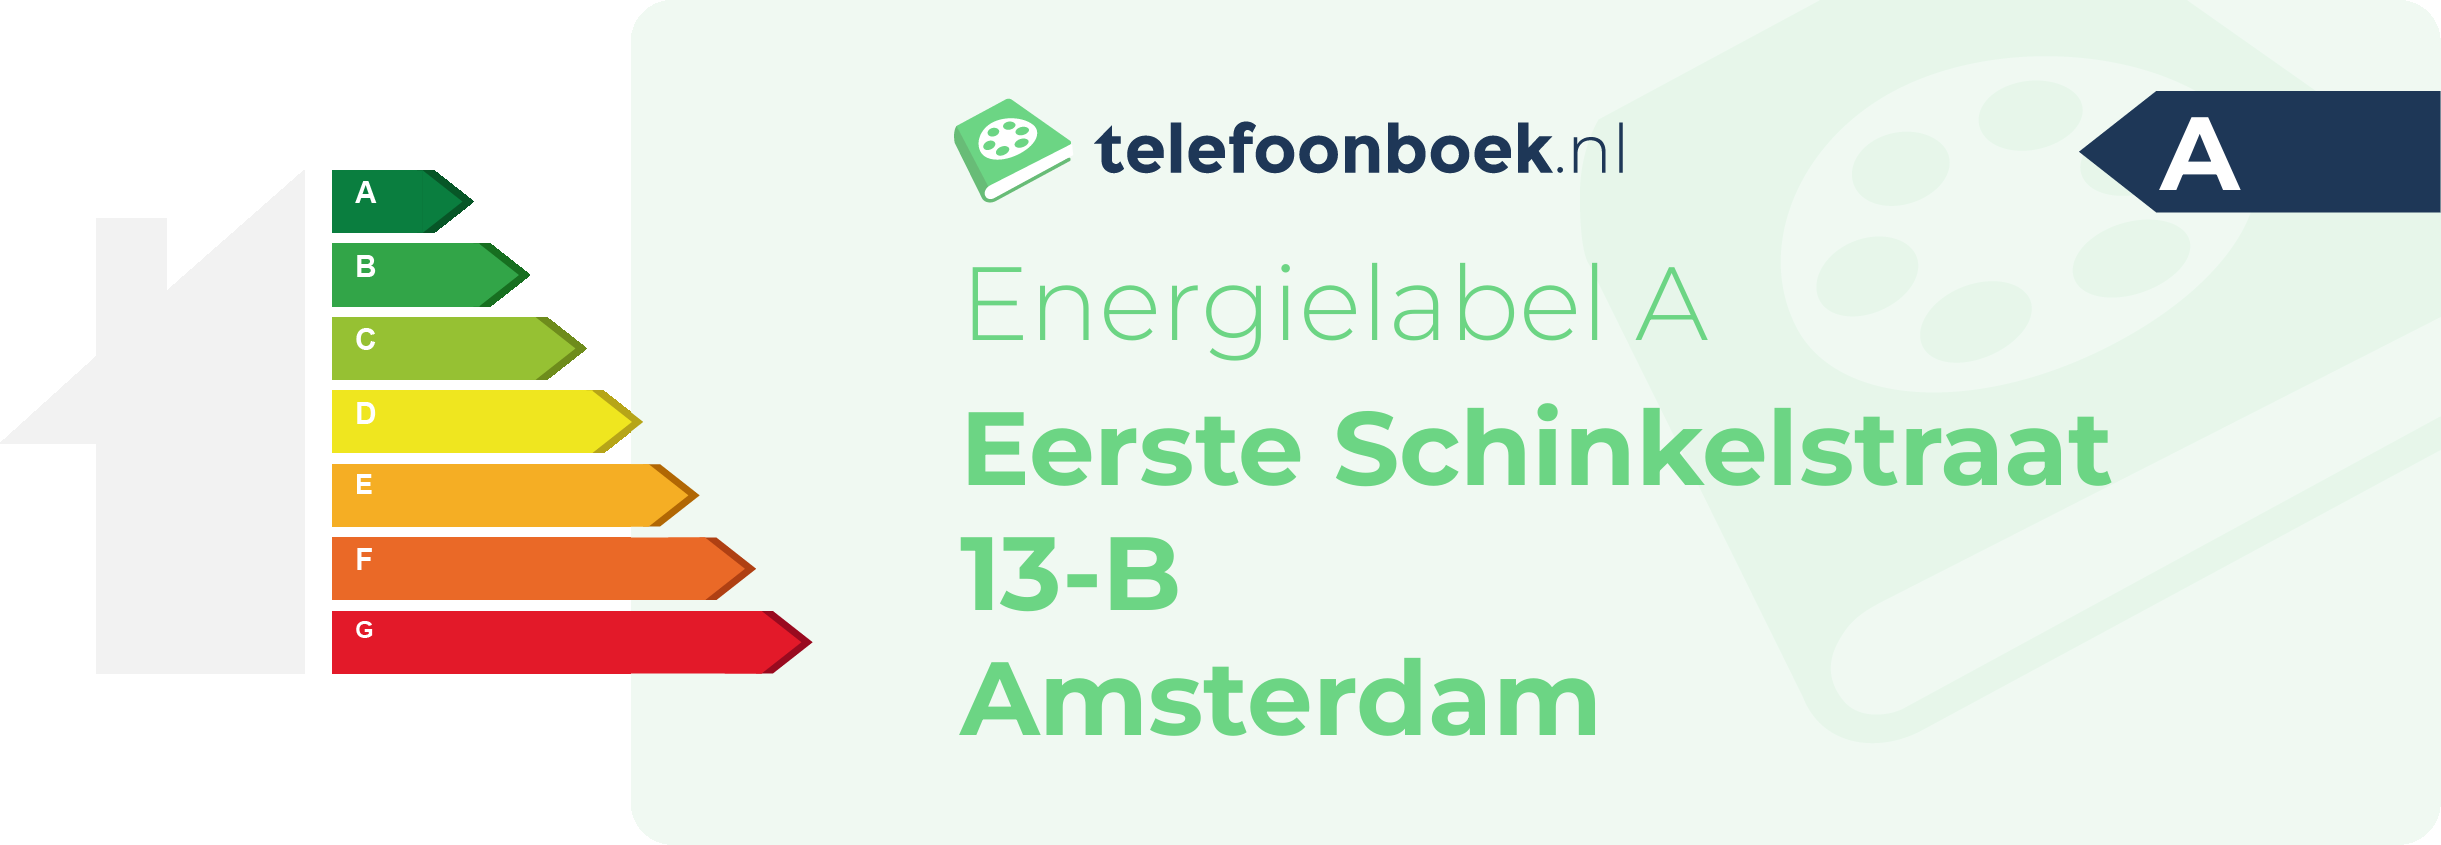 Energielabel Eerste Schinkelstraat 13-B Amsterdam